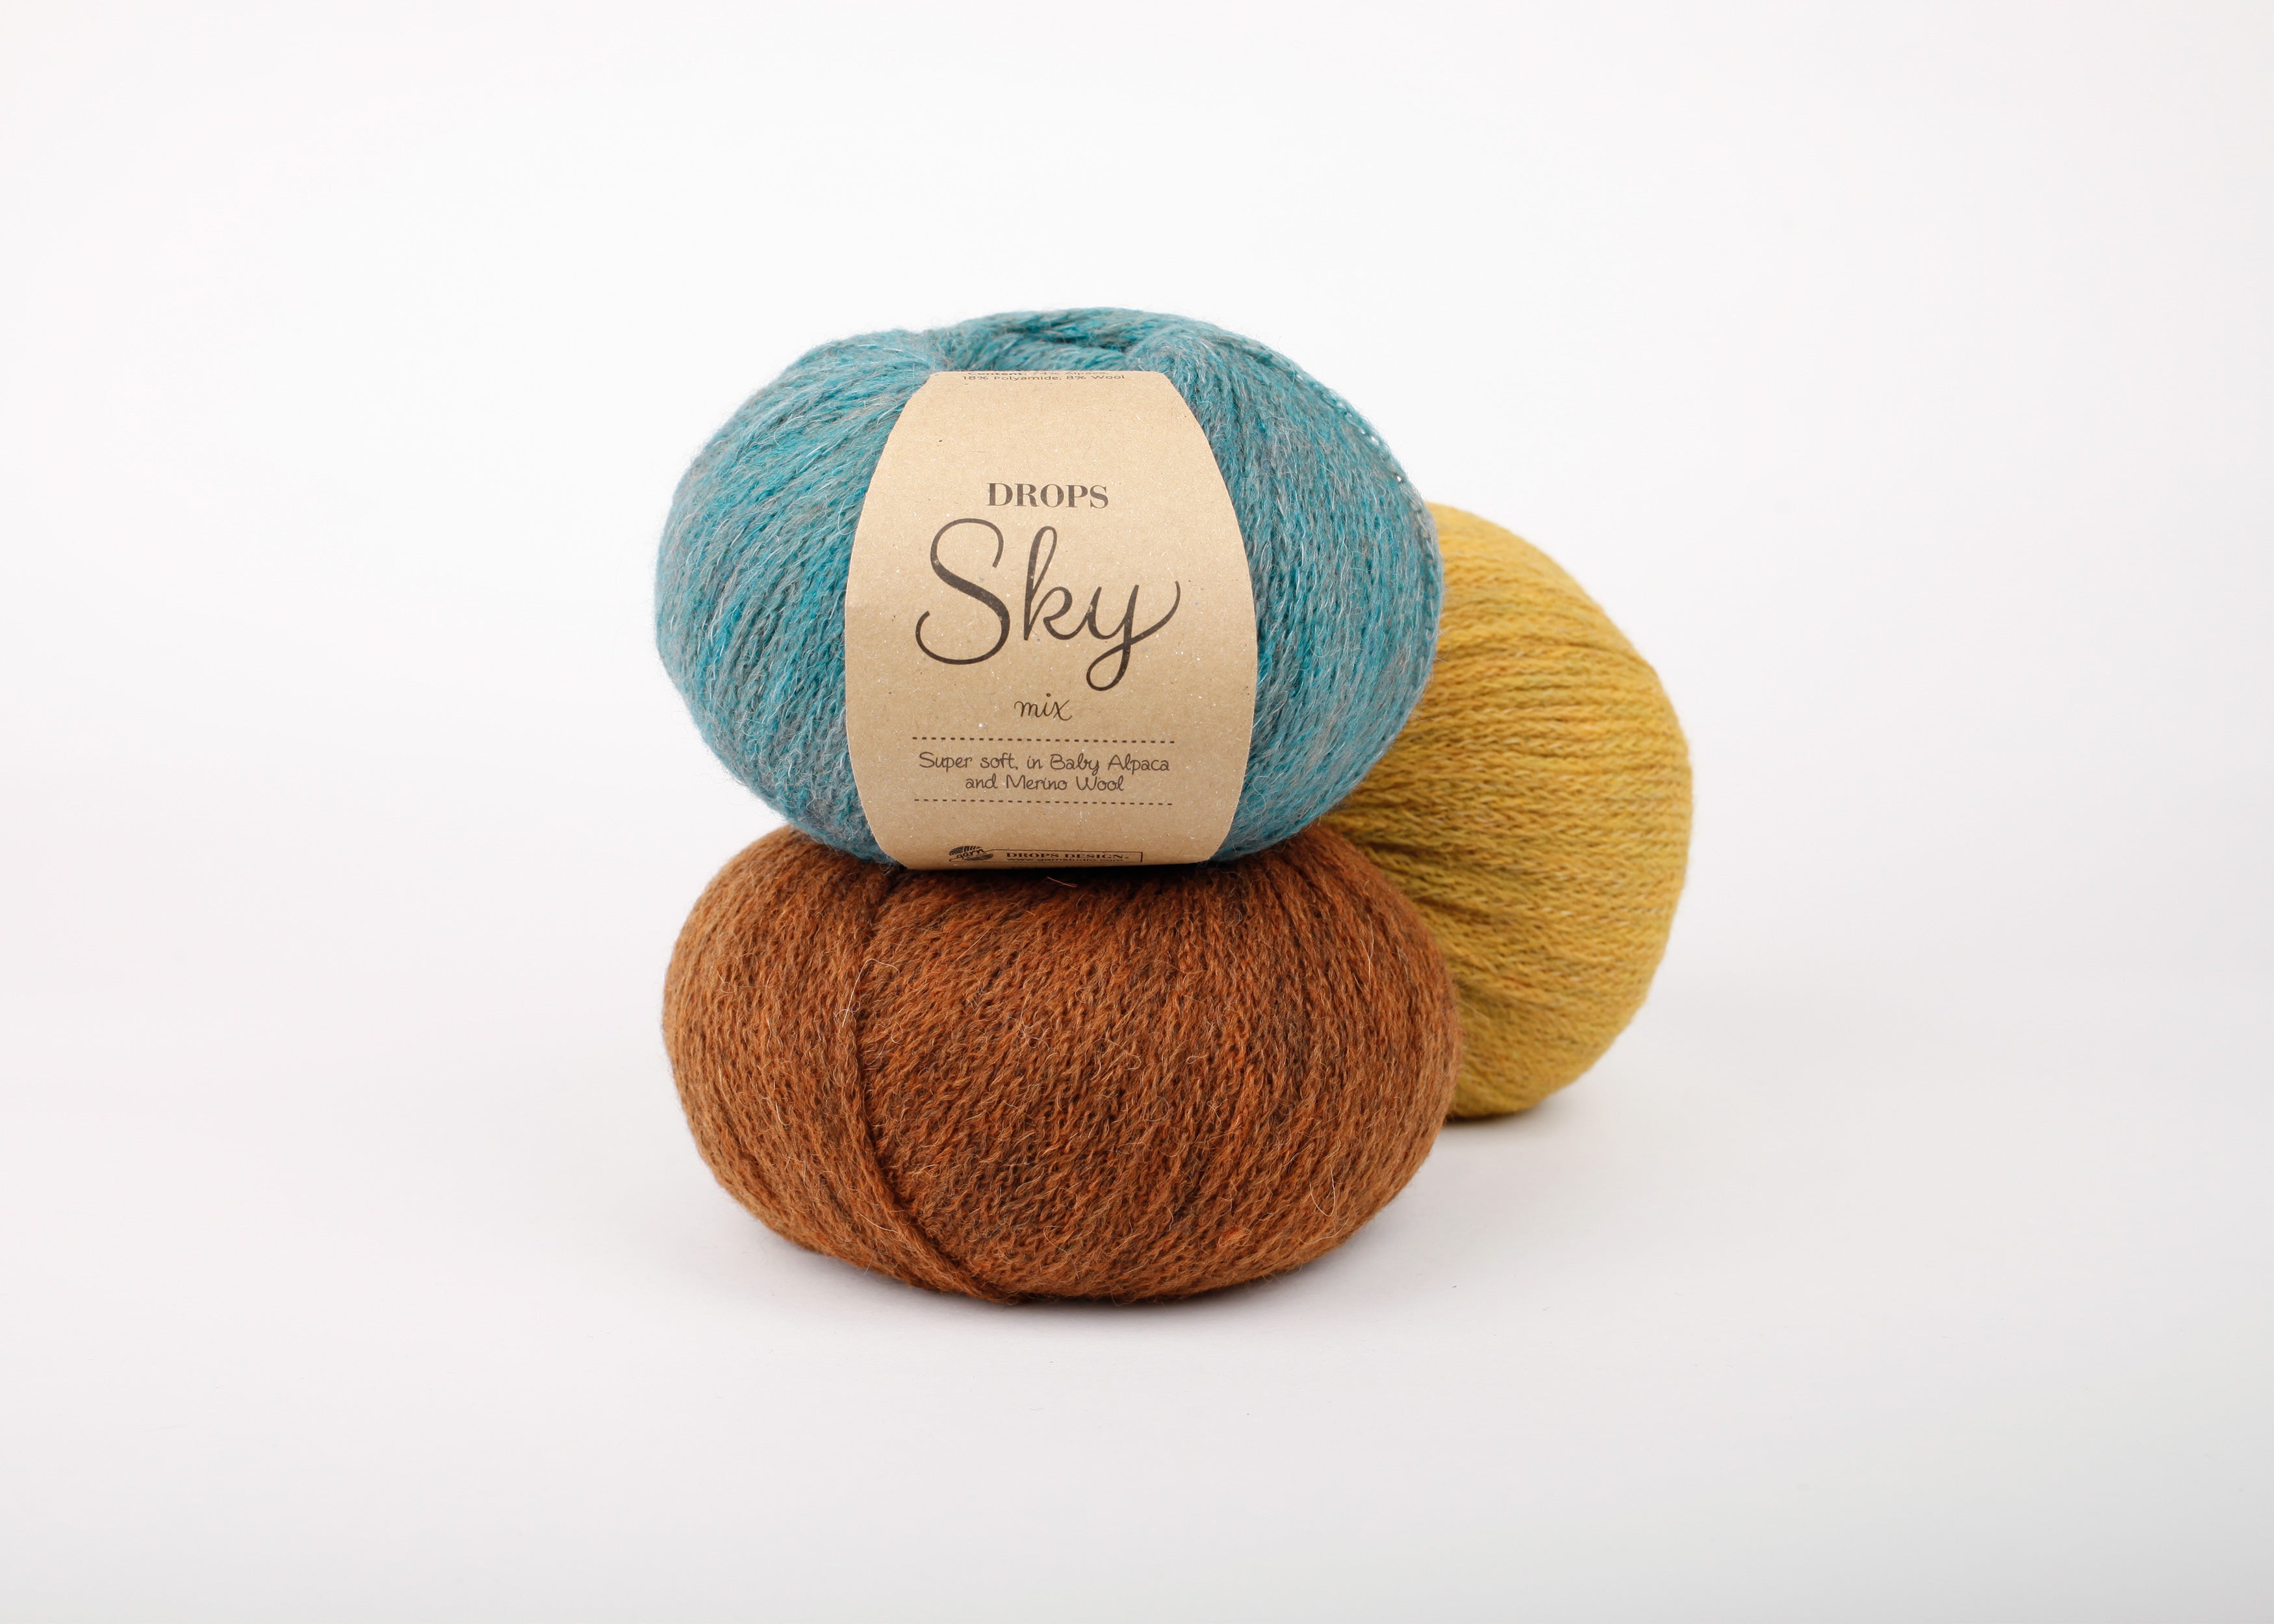 Baby alpaca yarn/ DK yarn/ Knitting wool yarn/ Drops SKY yarn